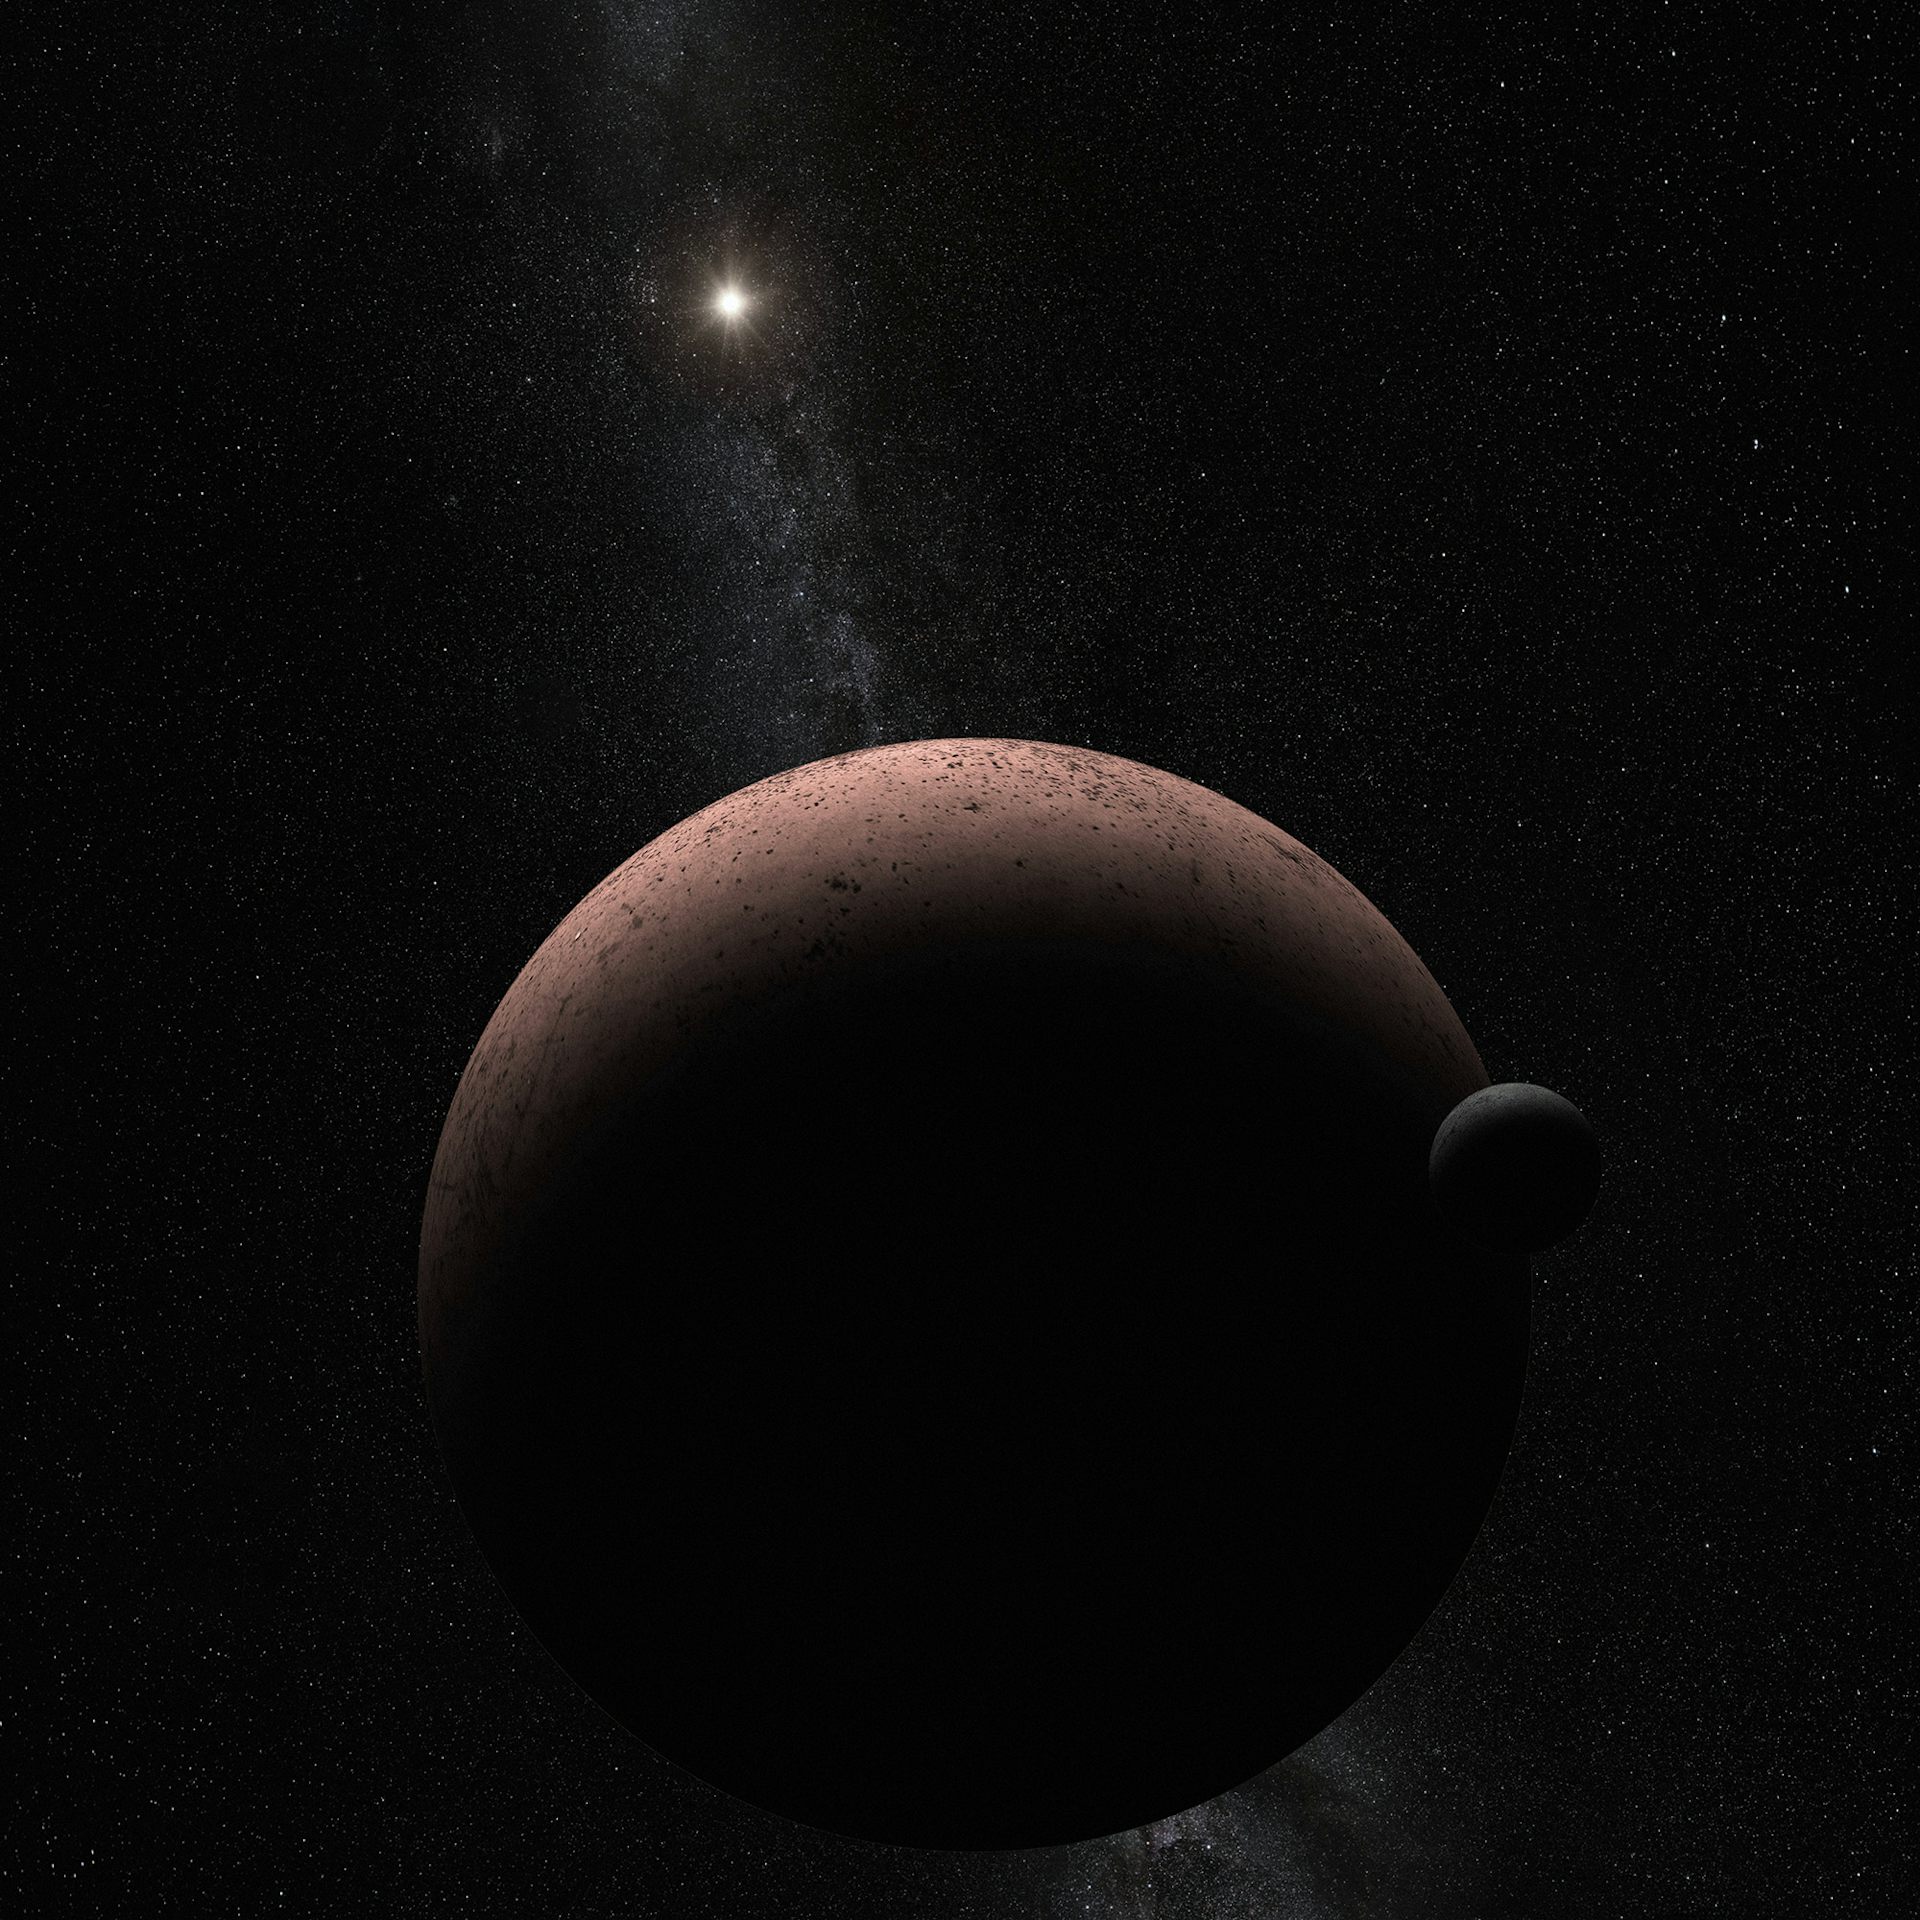 Une illustration par l'artiste de la planète naine Kuiper Belt Makemake.  A proximité se trouve sa lune, MK 2. À l'extérieur : Soleil.